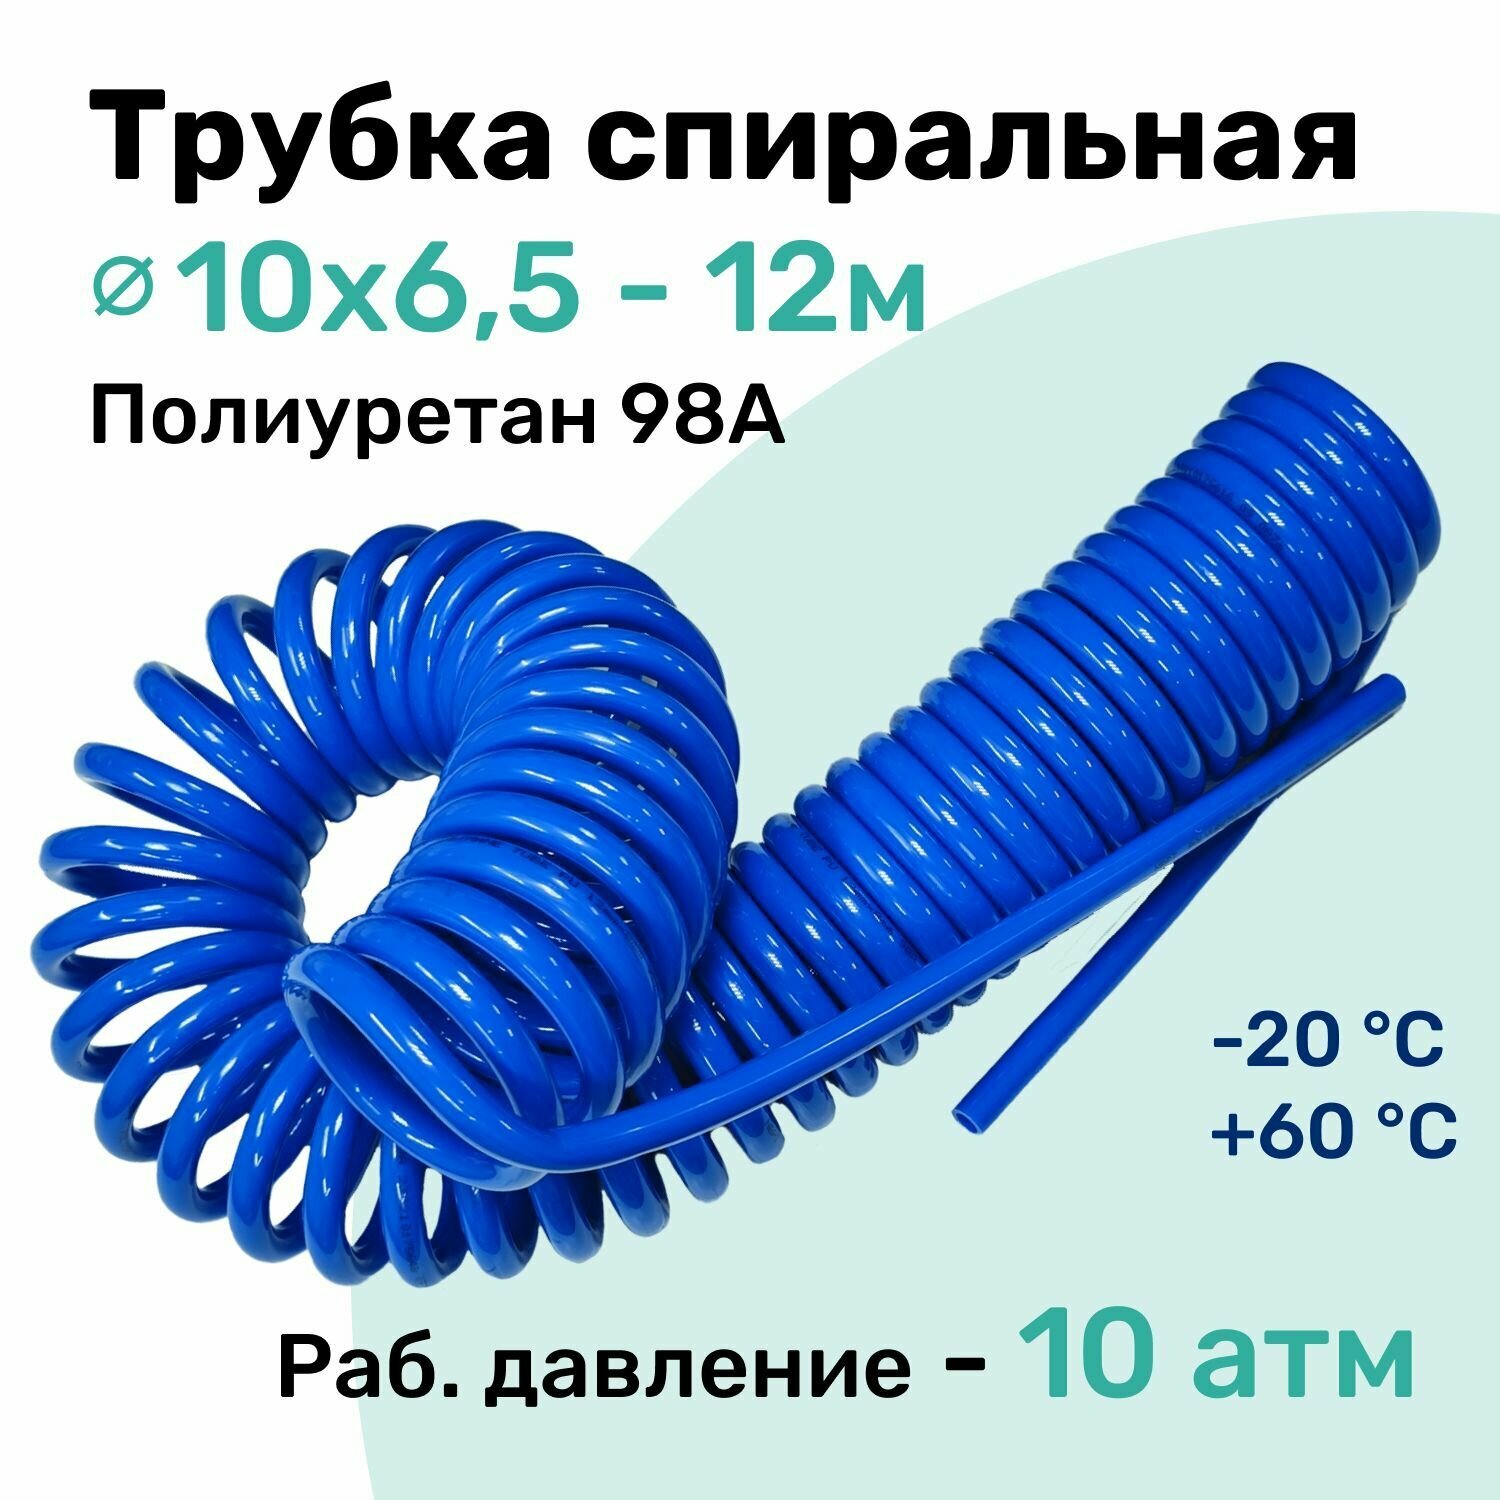 Пневмотрубка спиральная 10х6,5мм, полиуретановая PU98A, 12м, 10 атм, Синий, Шланг спиральный пневматический NBPT